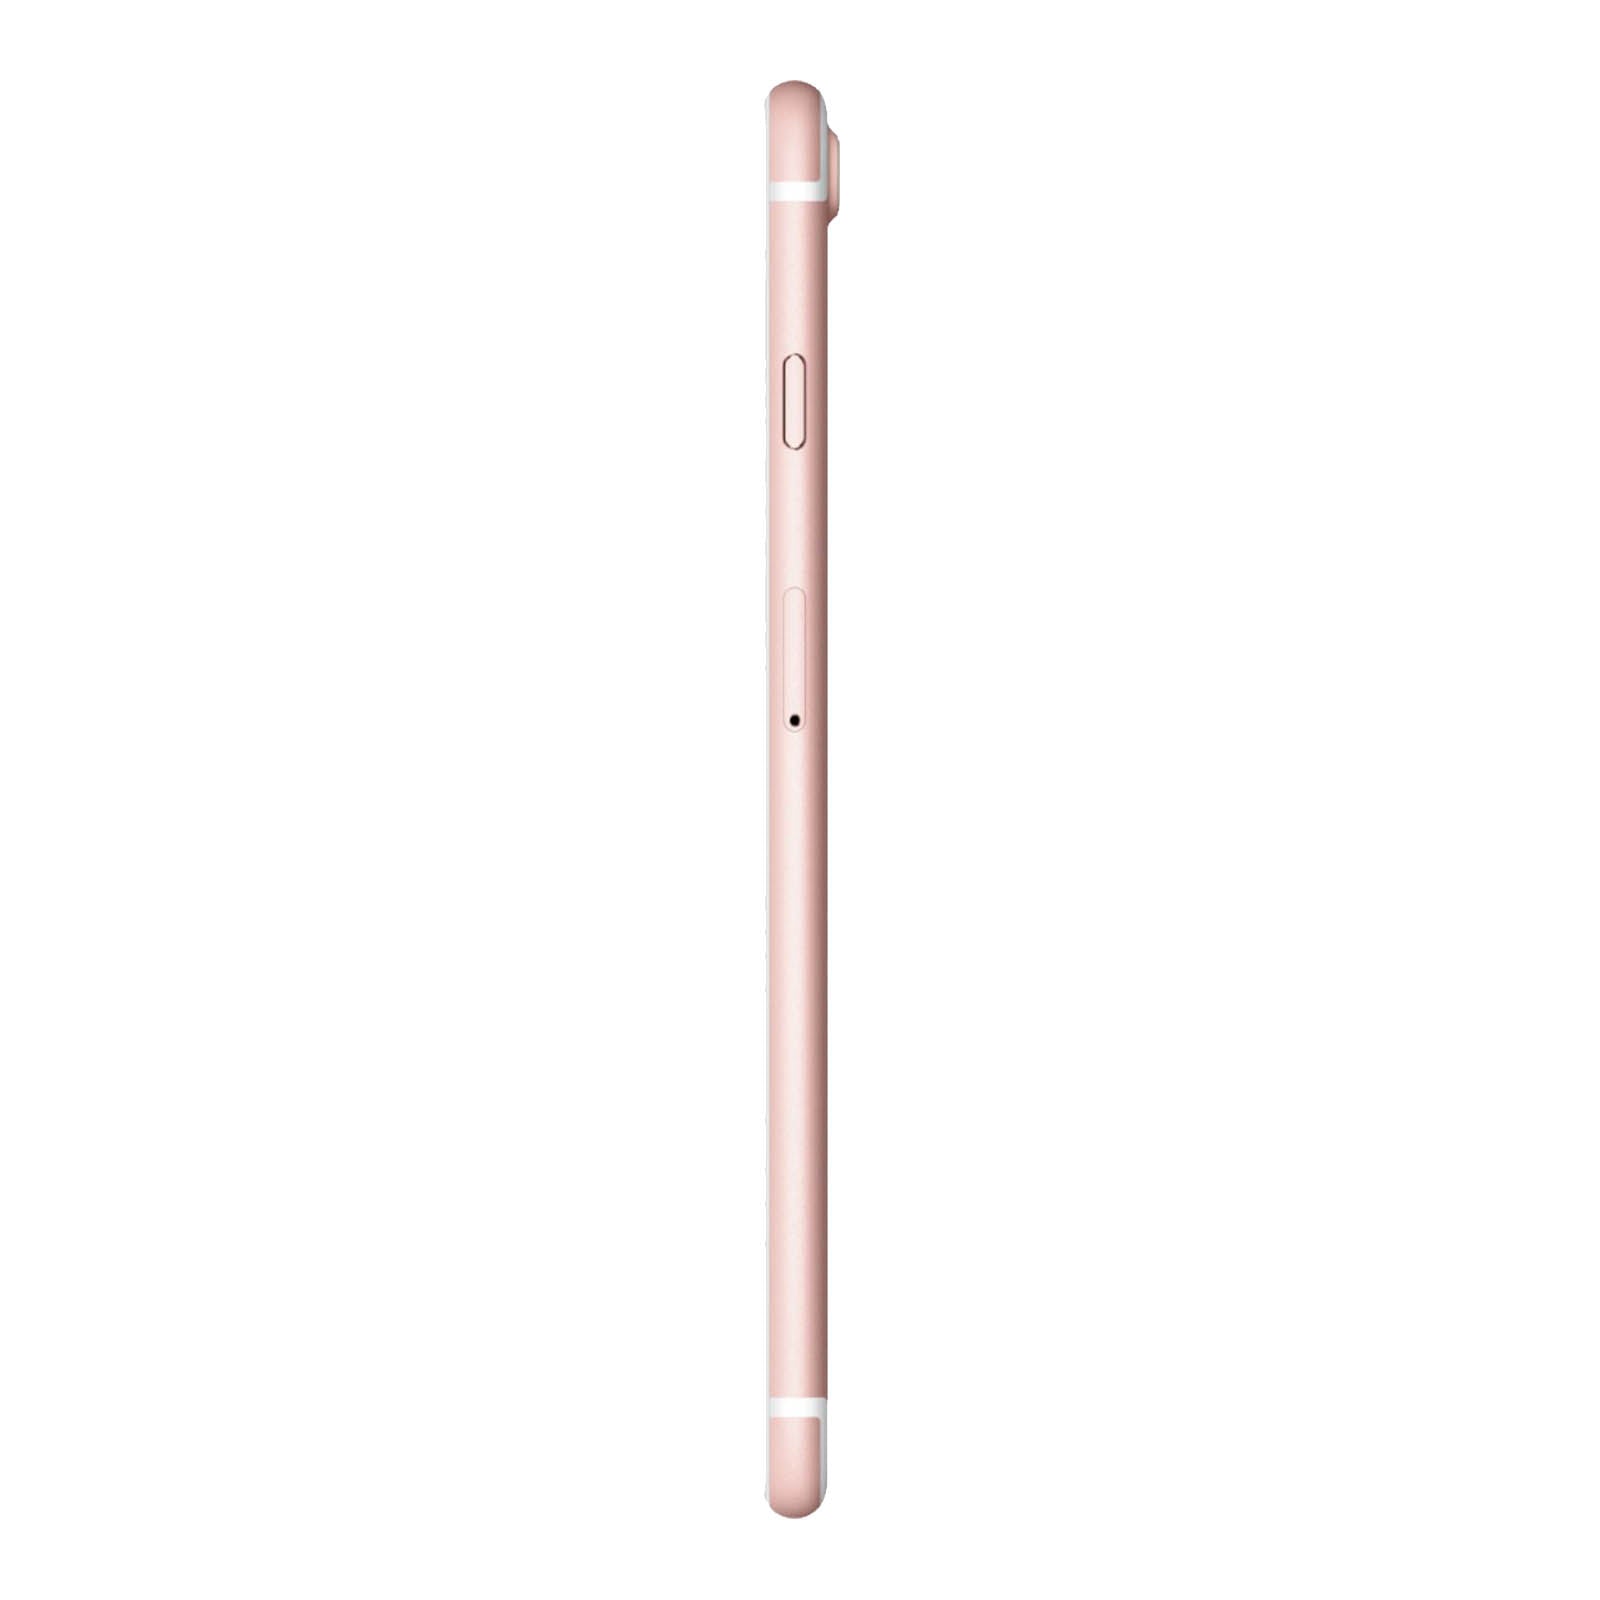 Apple iPhone 7 Plus 128GB Oro Rosa Buono Sbloccato